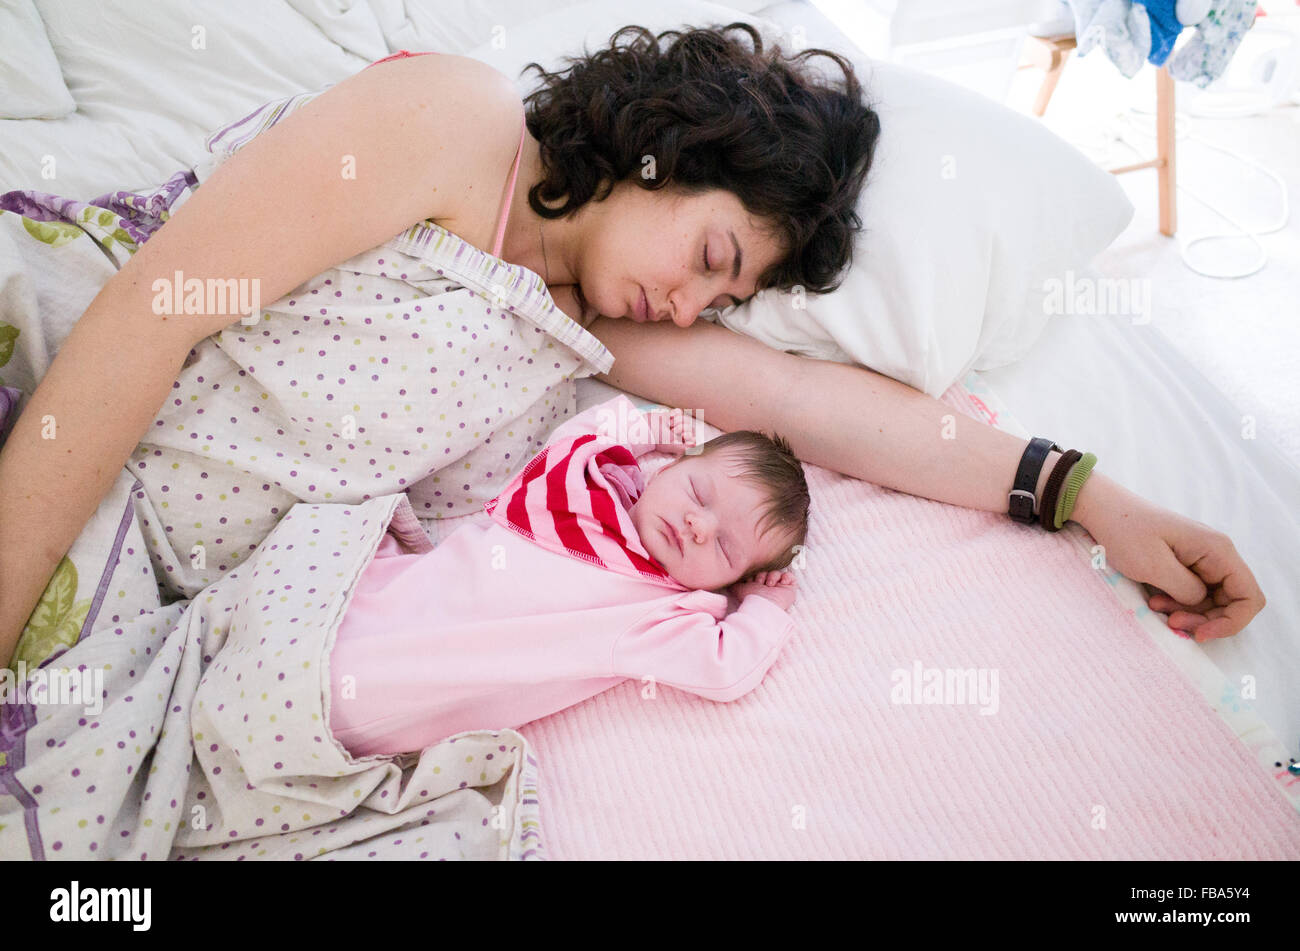 La madre durmiendo con su bebé recién nacido junto a ella en la misma cama Foto de stock